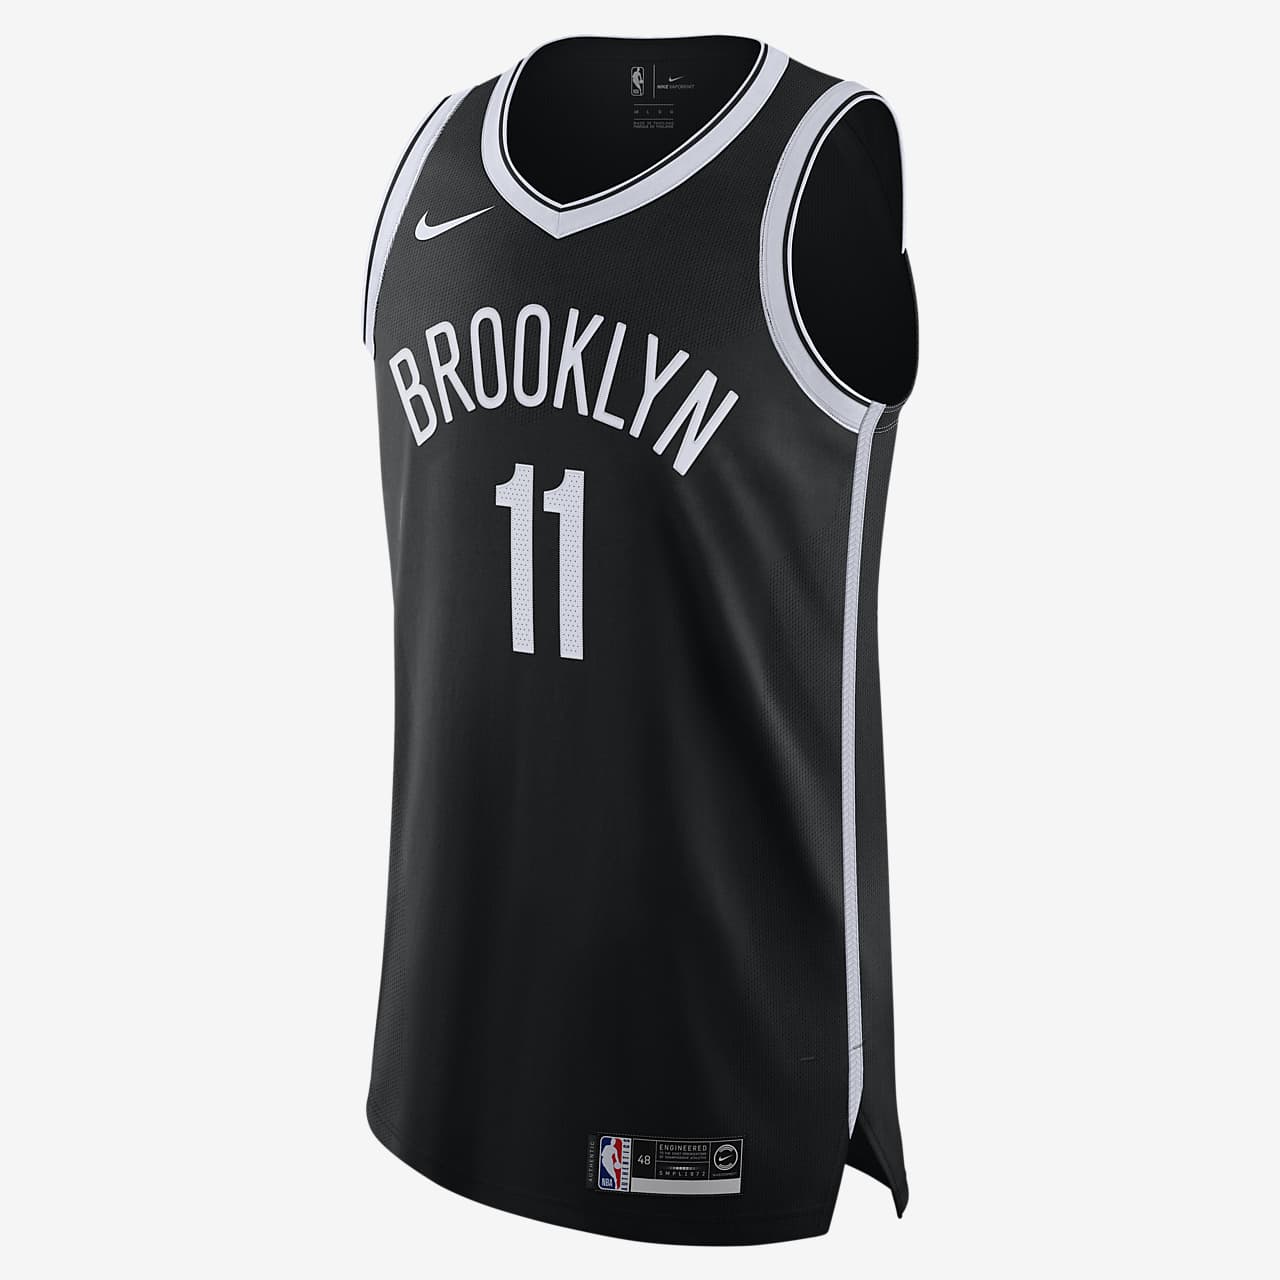 ergens bij betrokken zijn Bakken salto Kyrie Irving Nets Icon Edition Nike NBA Authentic Jersey. Nike.com